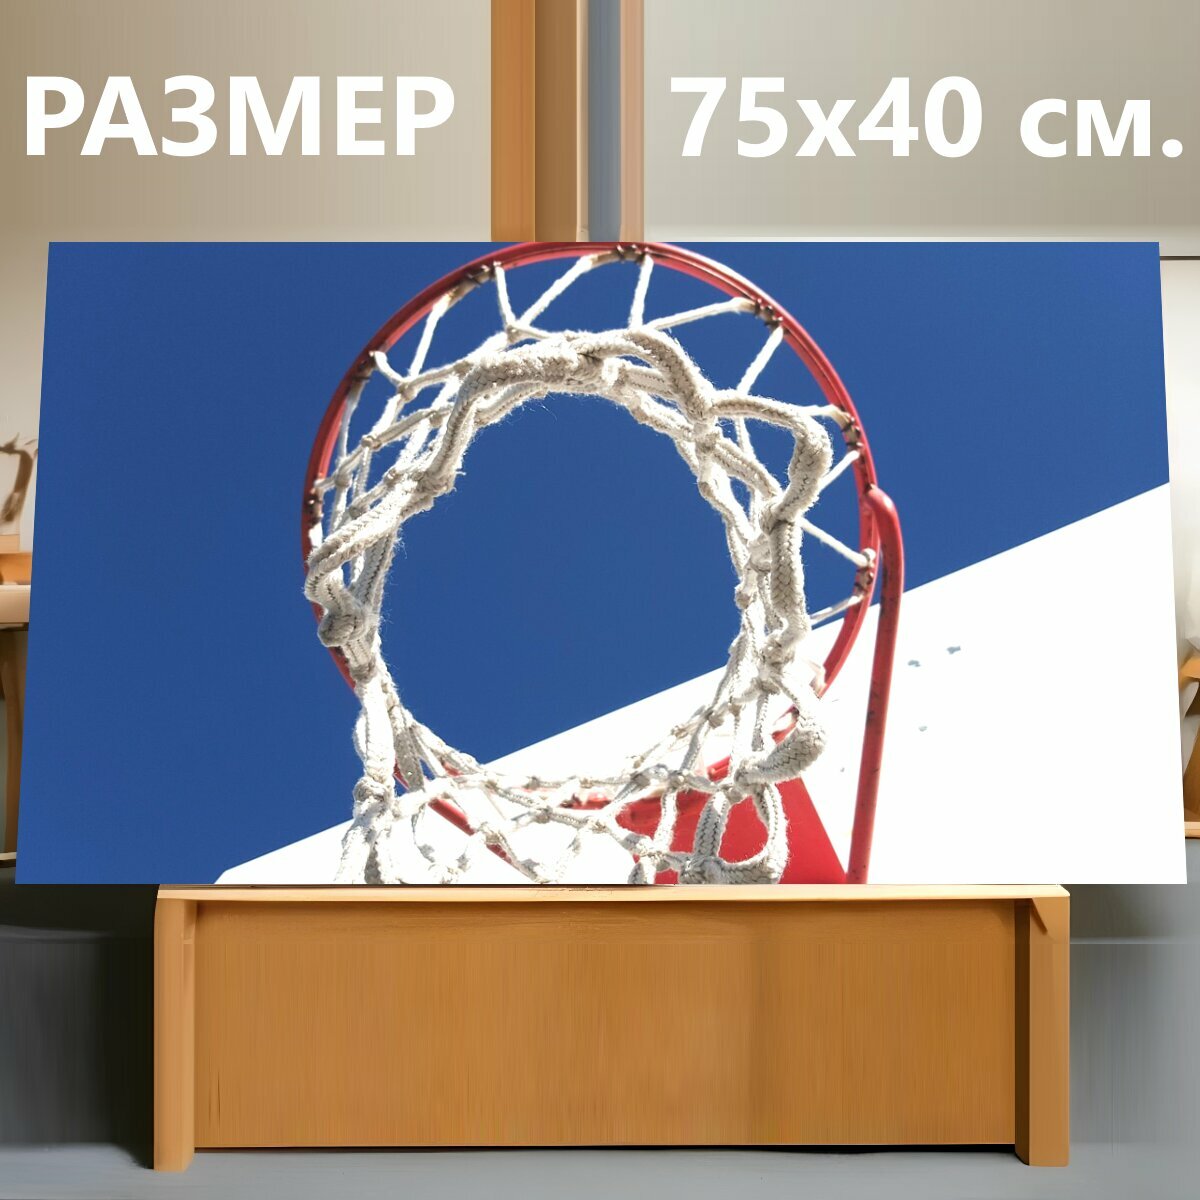 Картина на холсте "Баскетбол, виды спорта, баскетбольное кольцо" на подрамнике 75х40 см. для интерьера